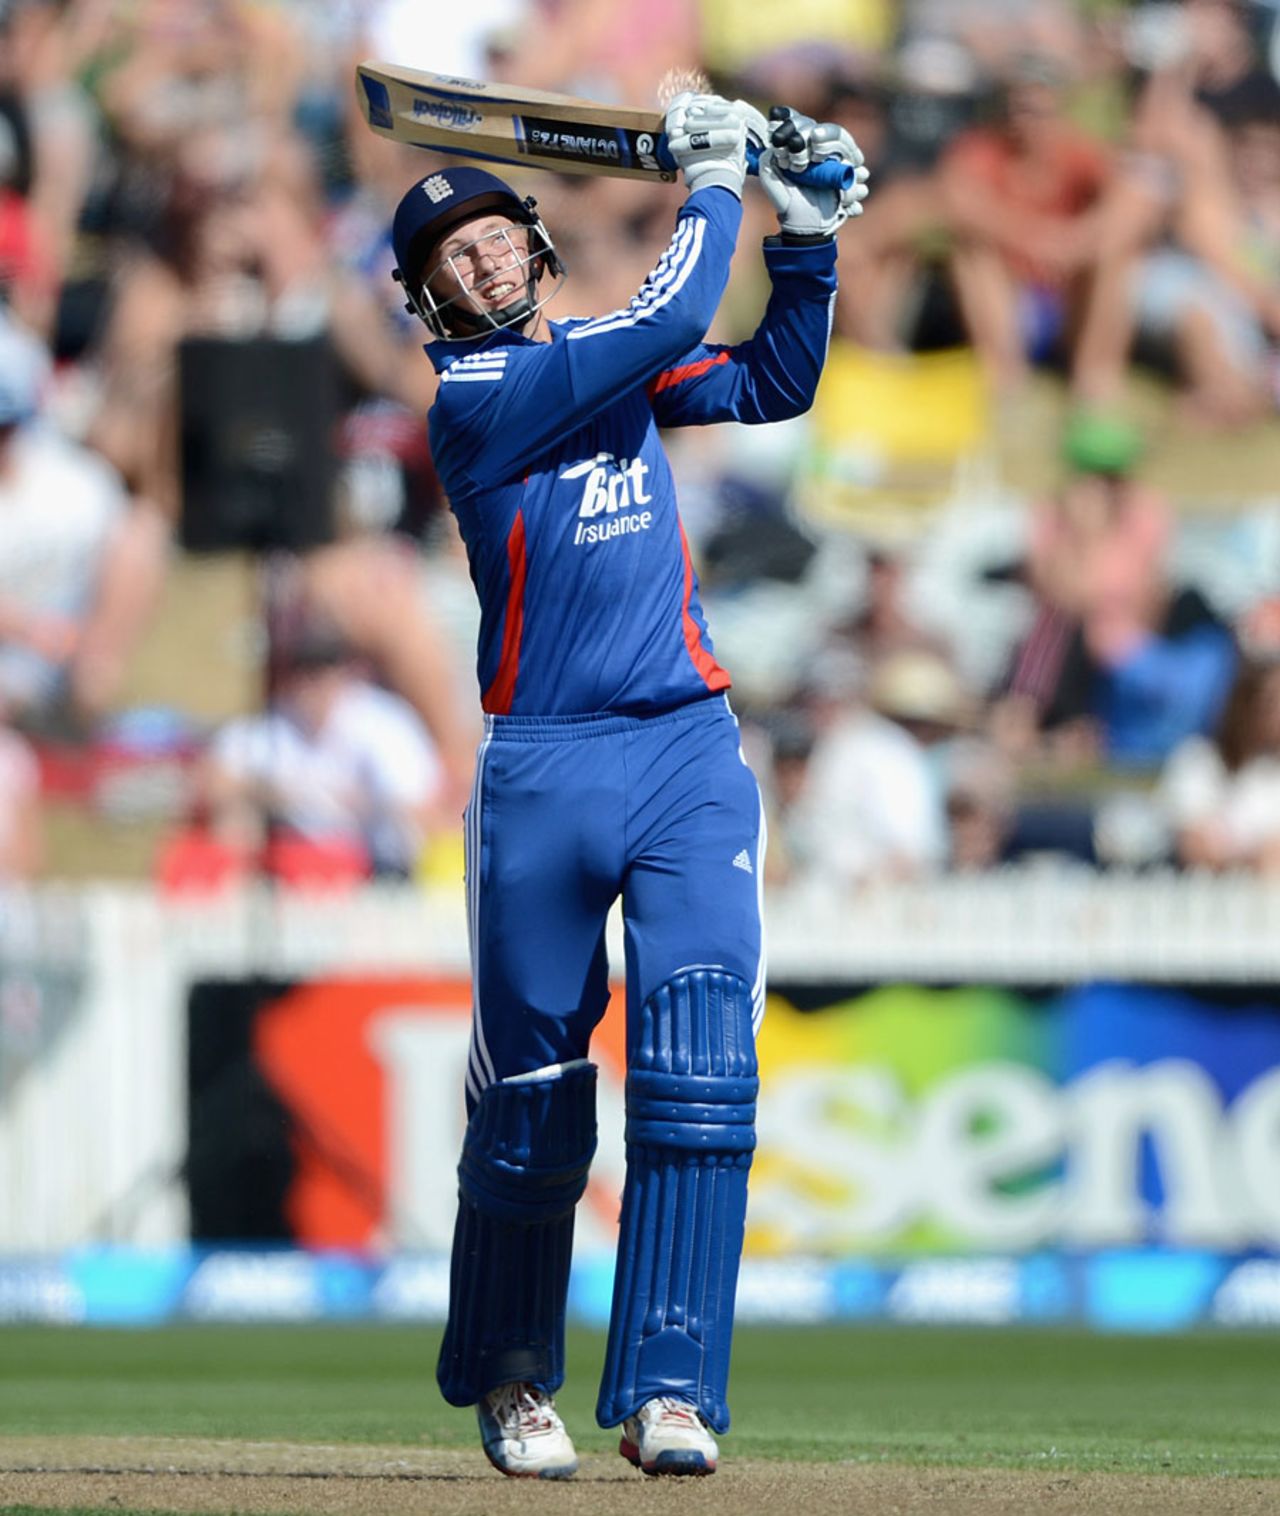 Joe Root hit 56 off 64 balls, New Zealand v England, 1st ODI, Hamilton, February 17, 2013